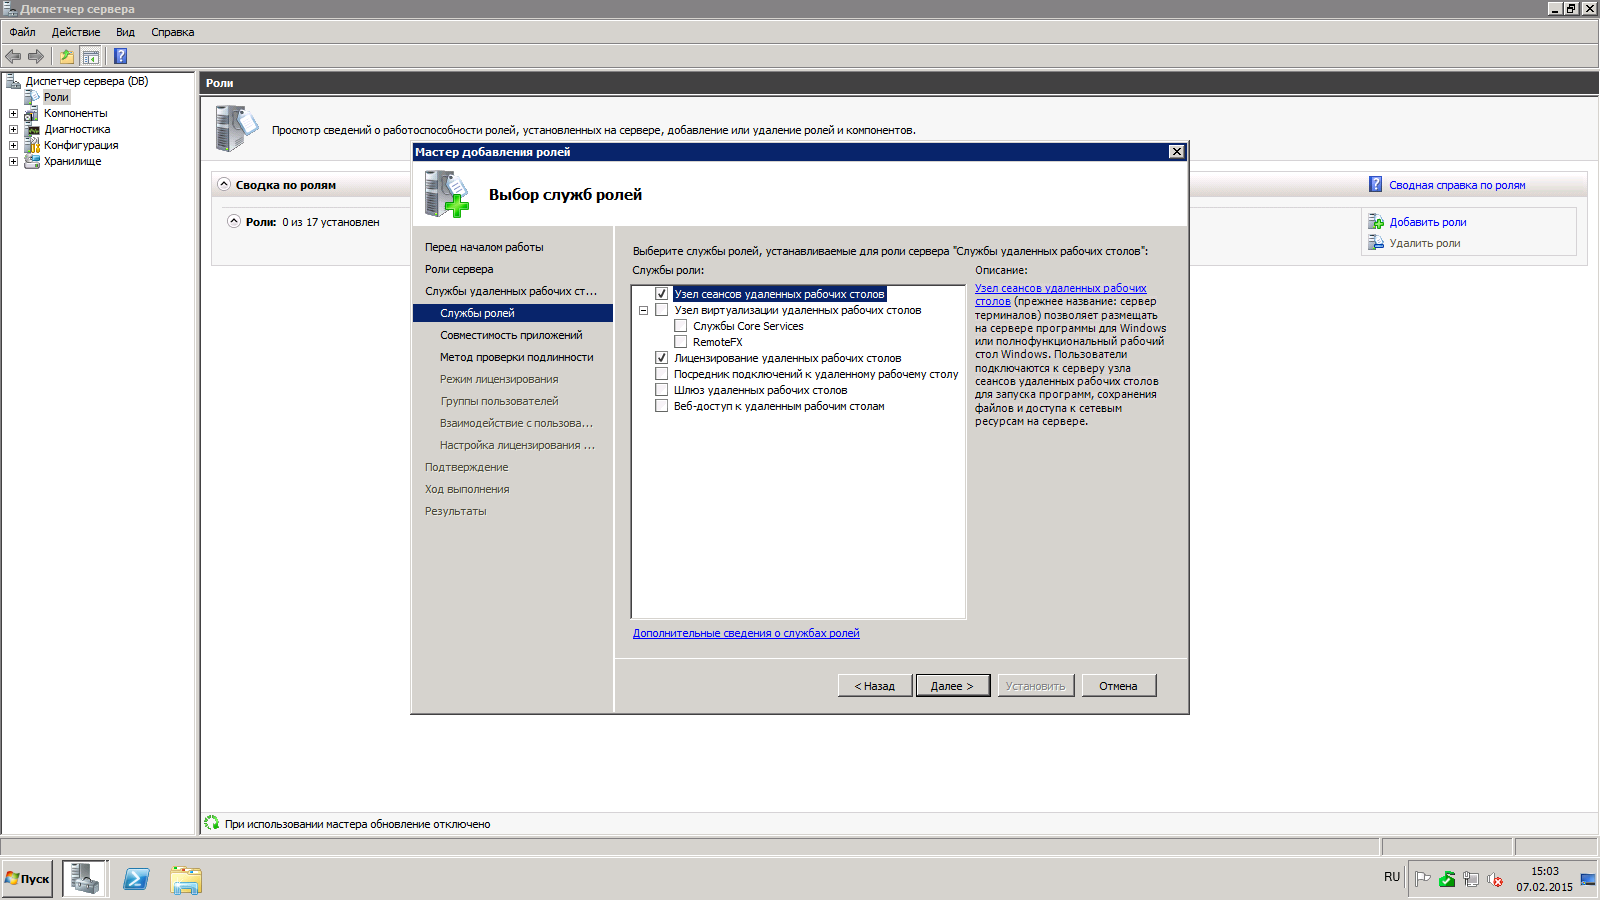 Программа доступ к сайту. Терминальный сервер на Windows 2008 r2. Терминальный сервер на Windows 10. Windows Server 2008 рабочий стол. Служба удаленного рабочего стола Windows 10.